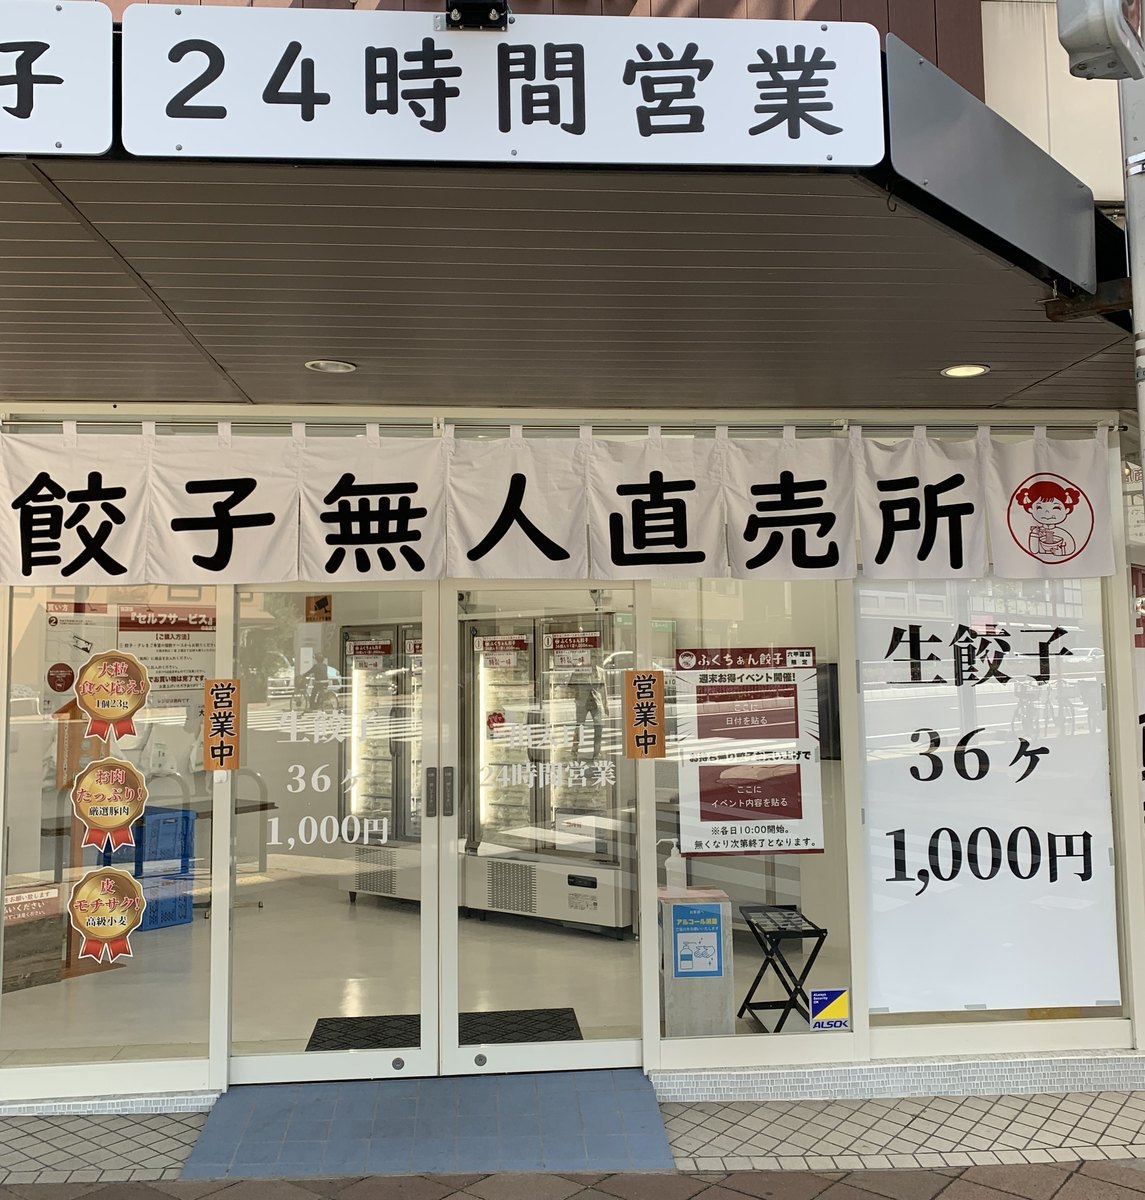 六甲道で餃子無人販売所見つけました。